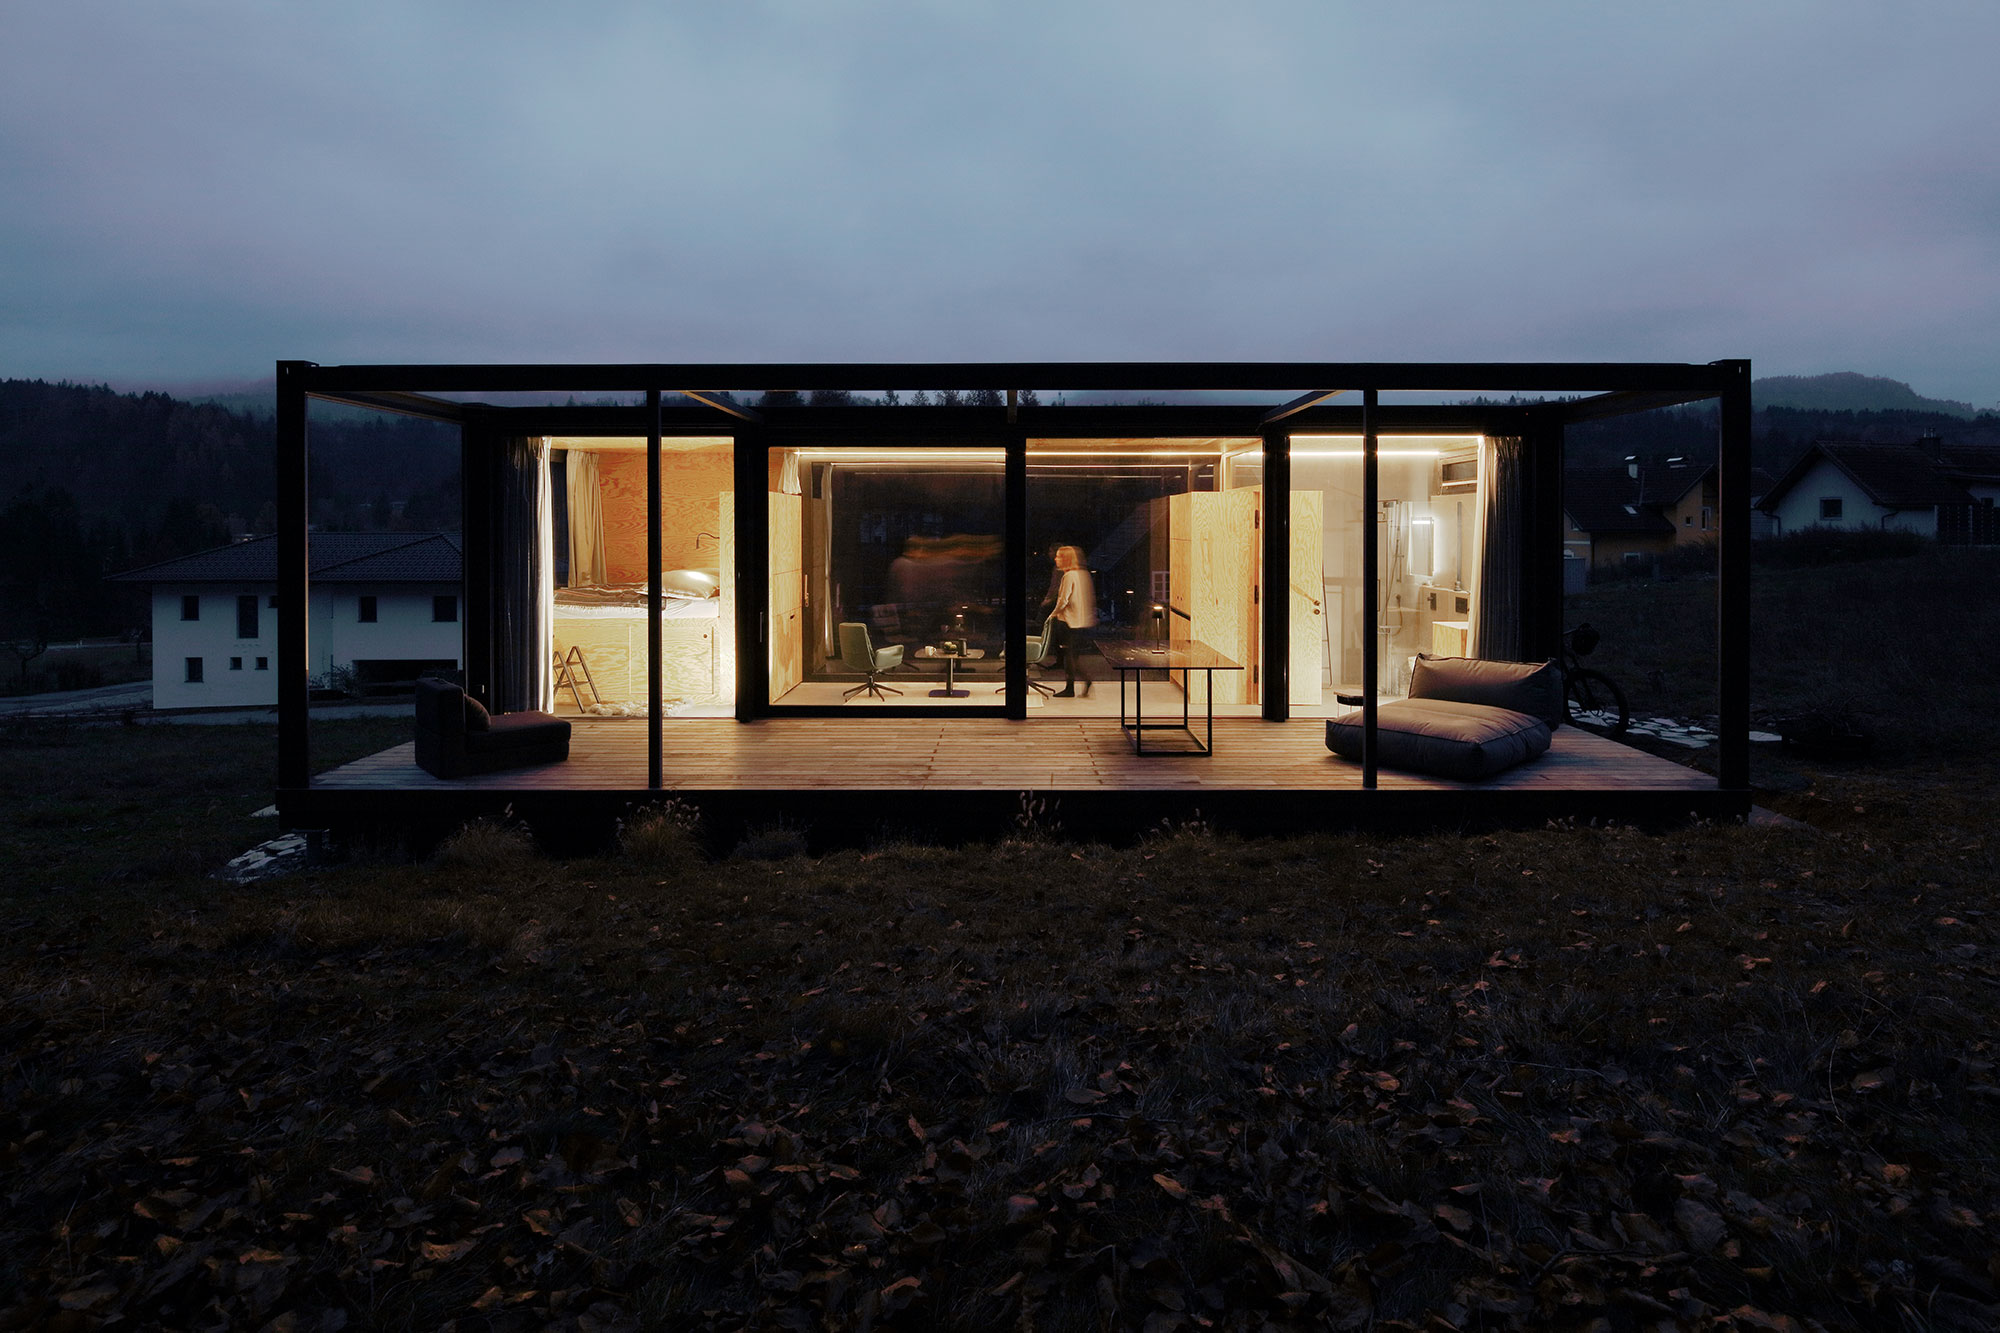 Modernes, minimalistisches kleines Haus mit großen Glaswänden und einer eleganten schwarzen Rahmenstruktur, eingebettet in eine düstere Landschaft, mit einer sichtbaren Person im Inneren, die das gemütliche Interieur genießt.